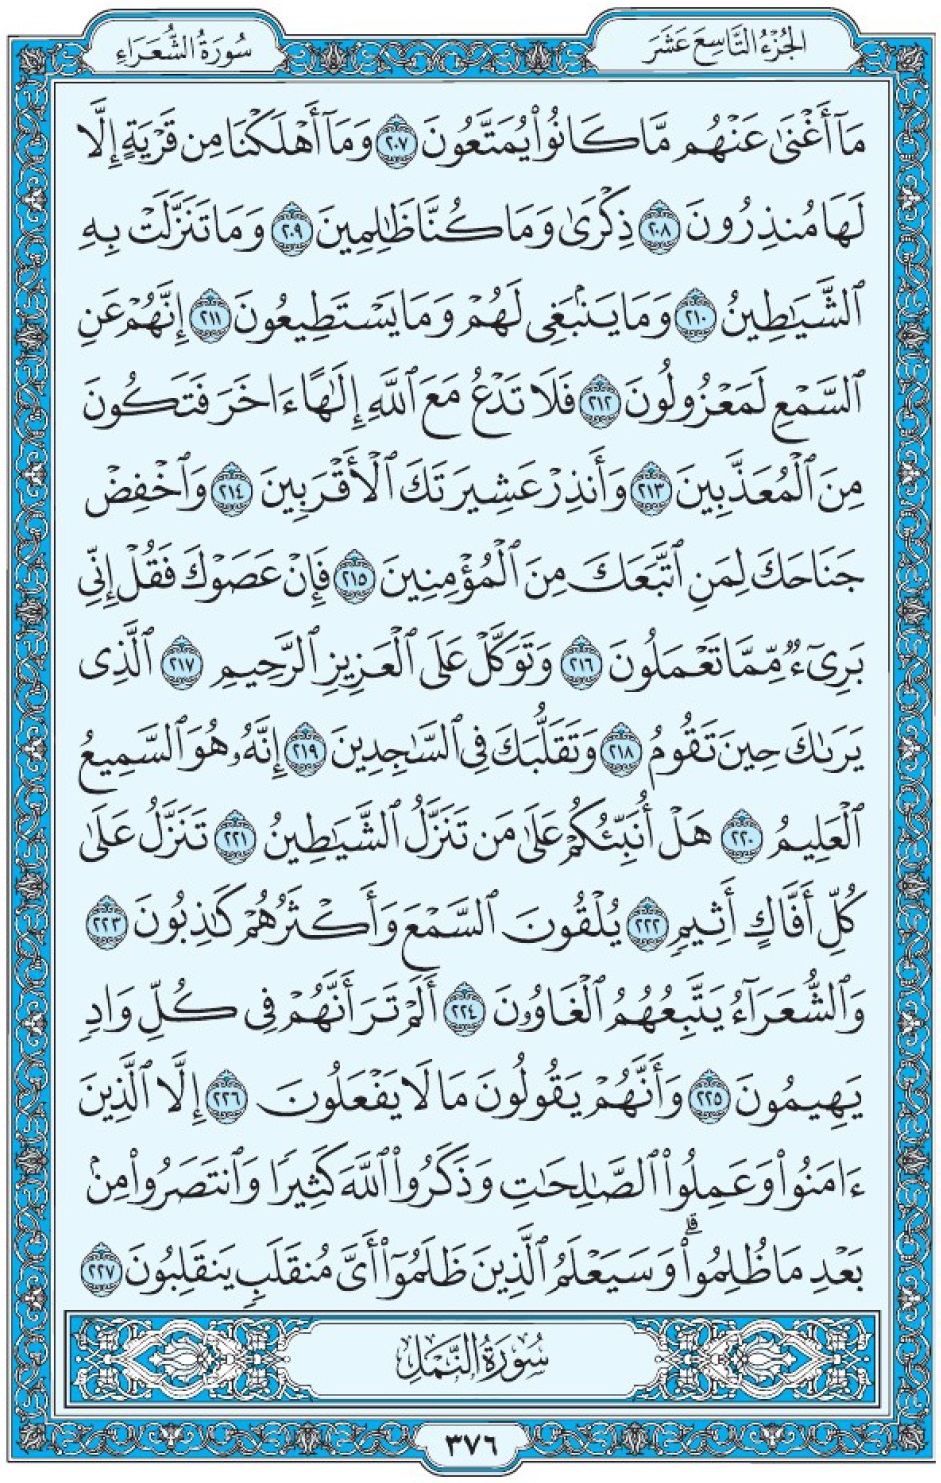 Коран Мединский мусхаф страница 376, Ащ-Щу‘араъ, аят 207-227